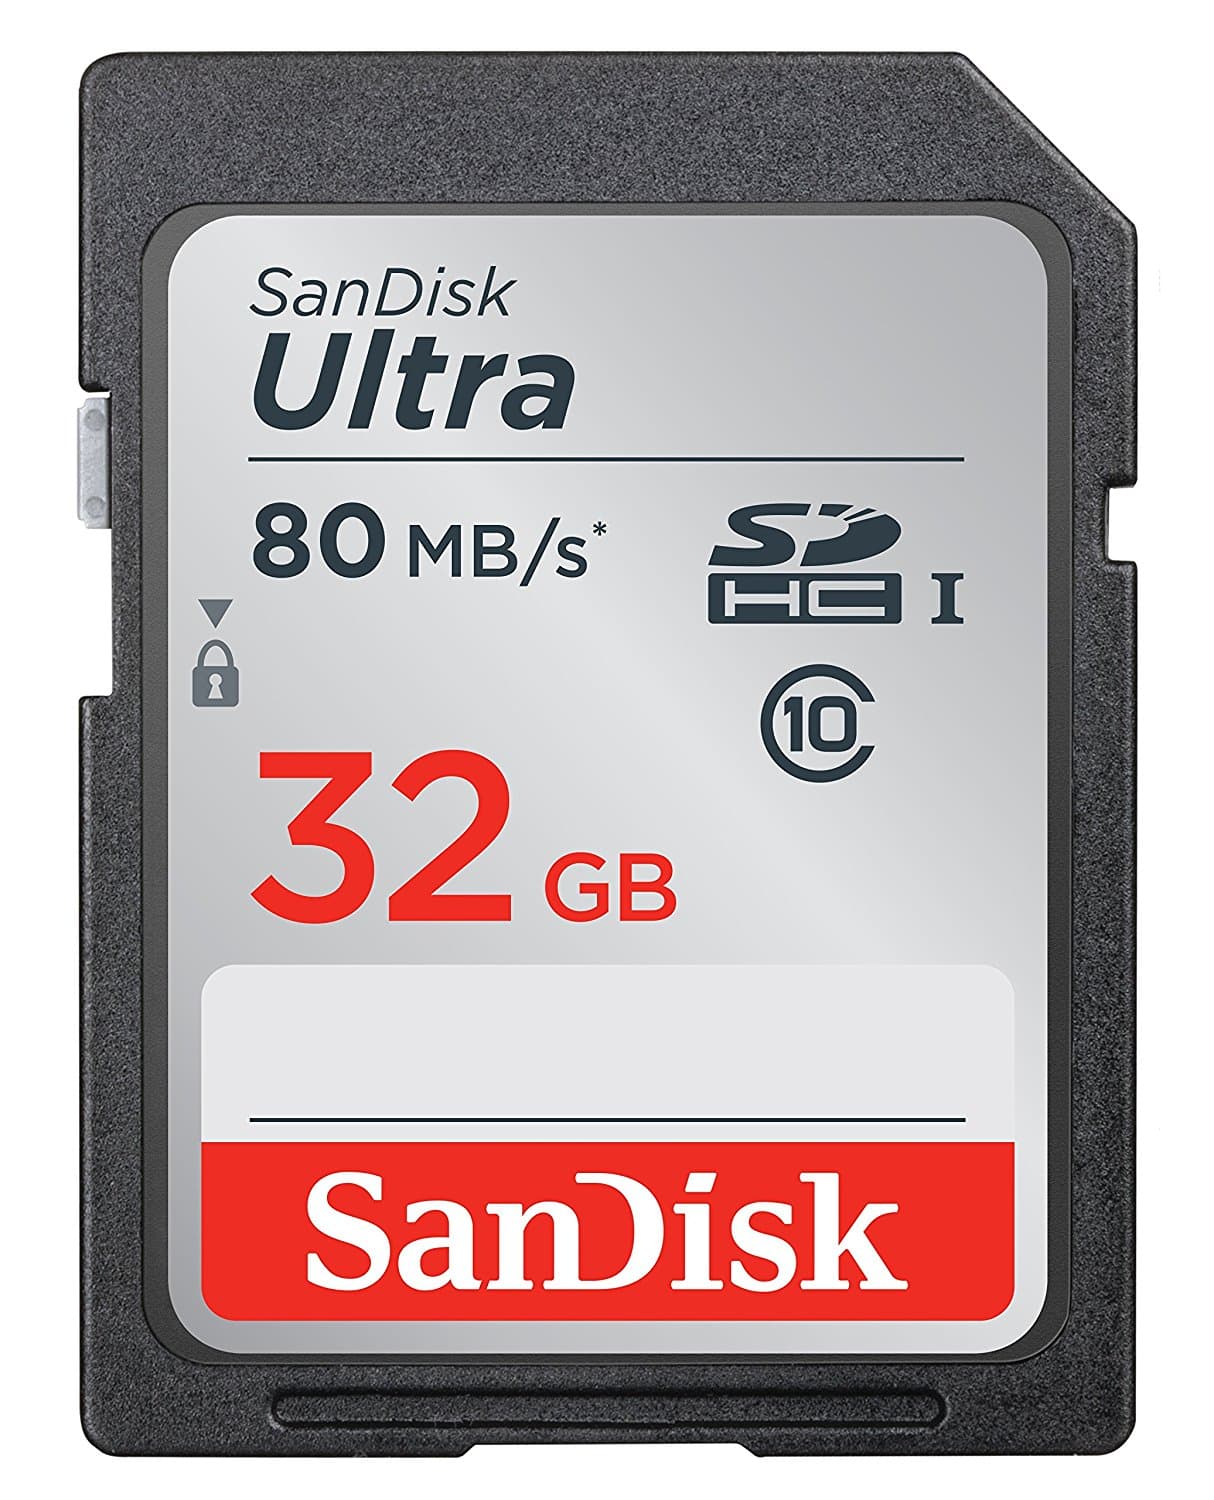 LIGHTNING DEAL ALERT! SanDisk memory products – 30%